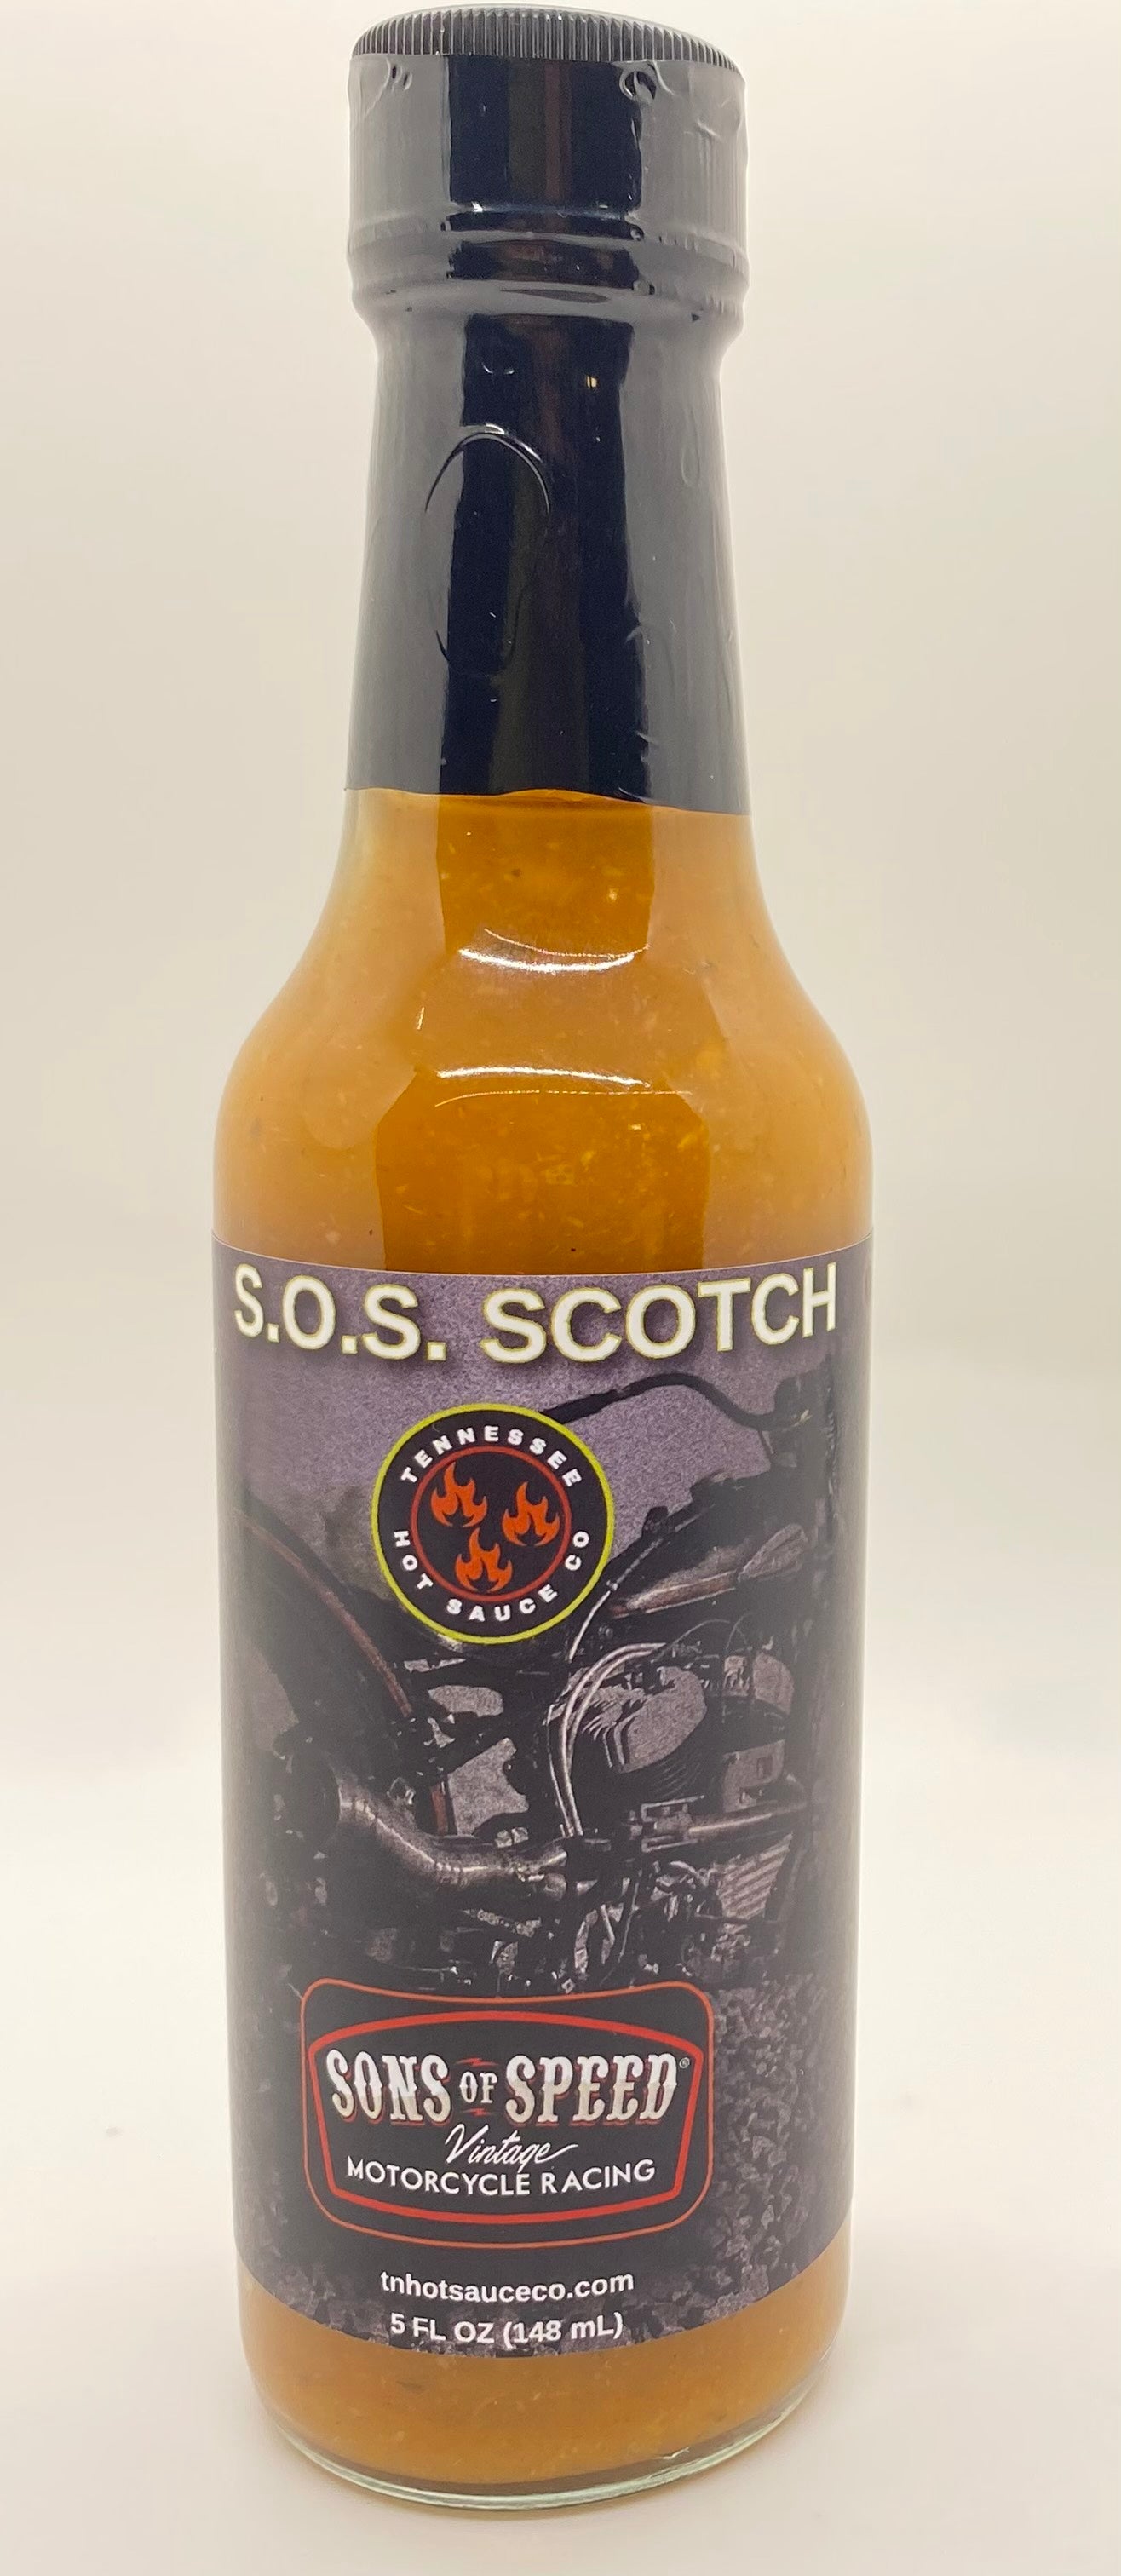 S.O.S. Scotch